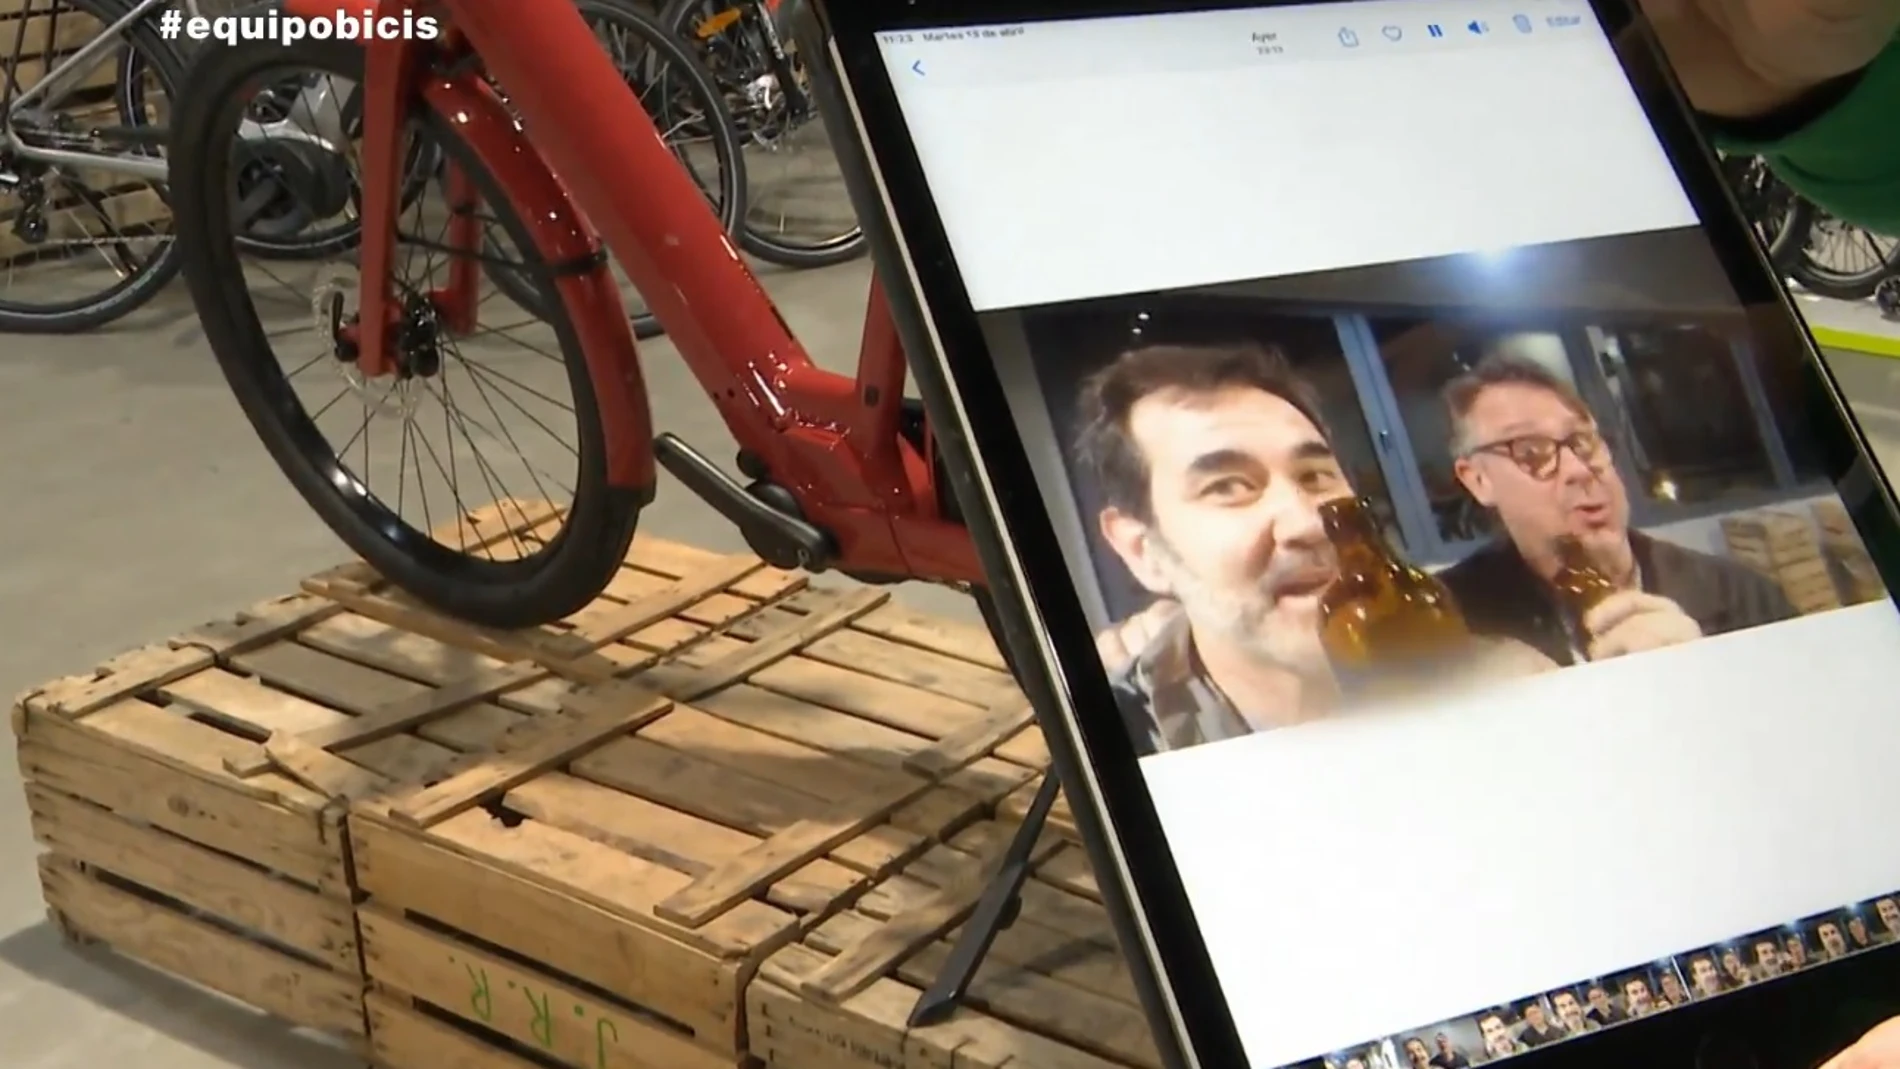 Increíble mensaje de los dueños de una tienda a los ladrones que les robaron 50.000 euros en bicicletas